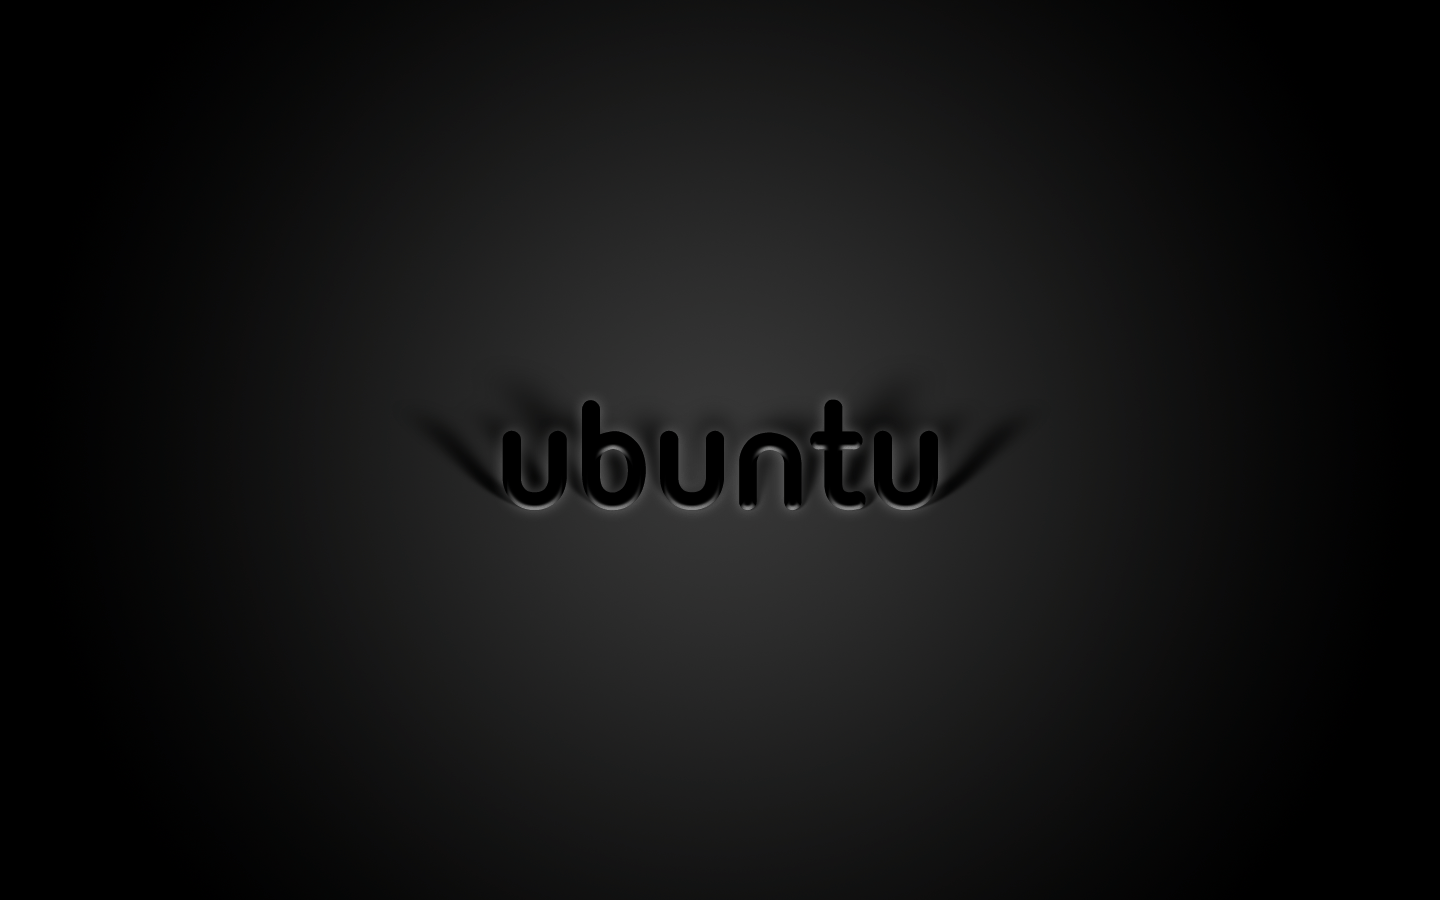 Ubuntu Wallpaper Black 37398 Free HD Desktop Wallpaper